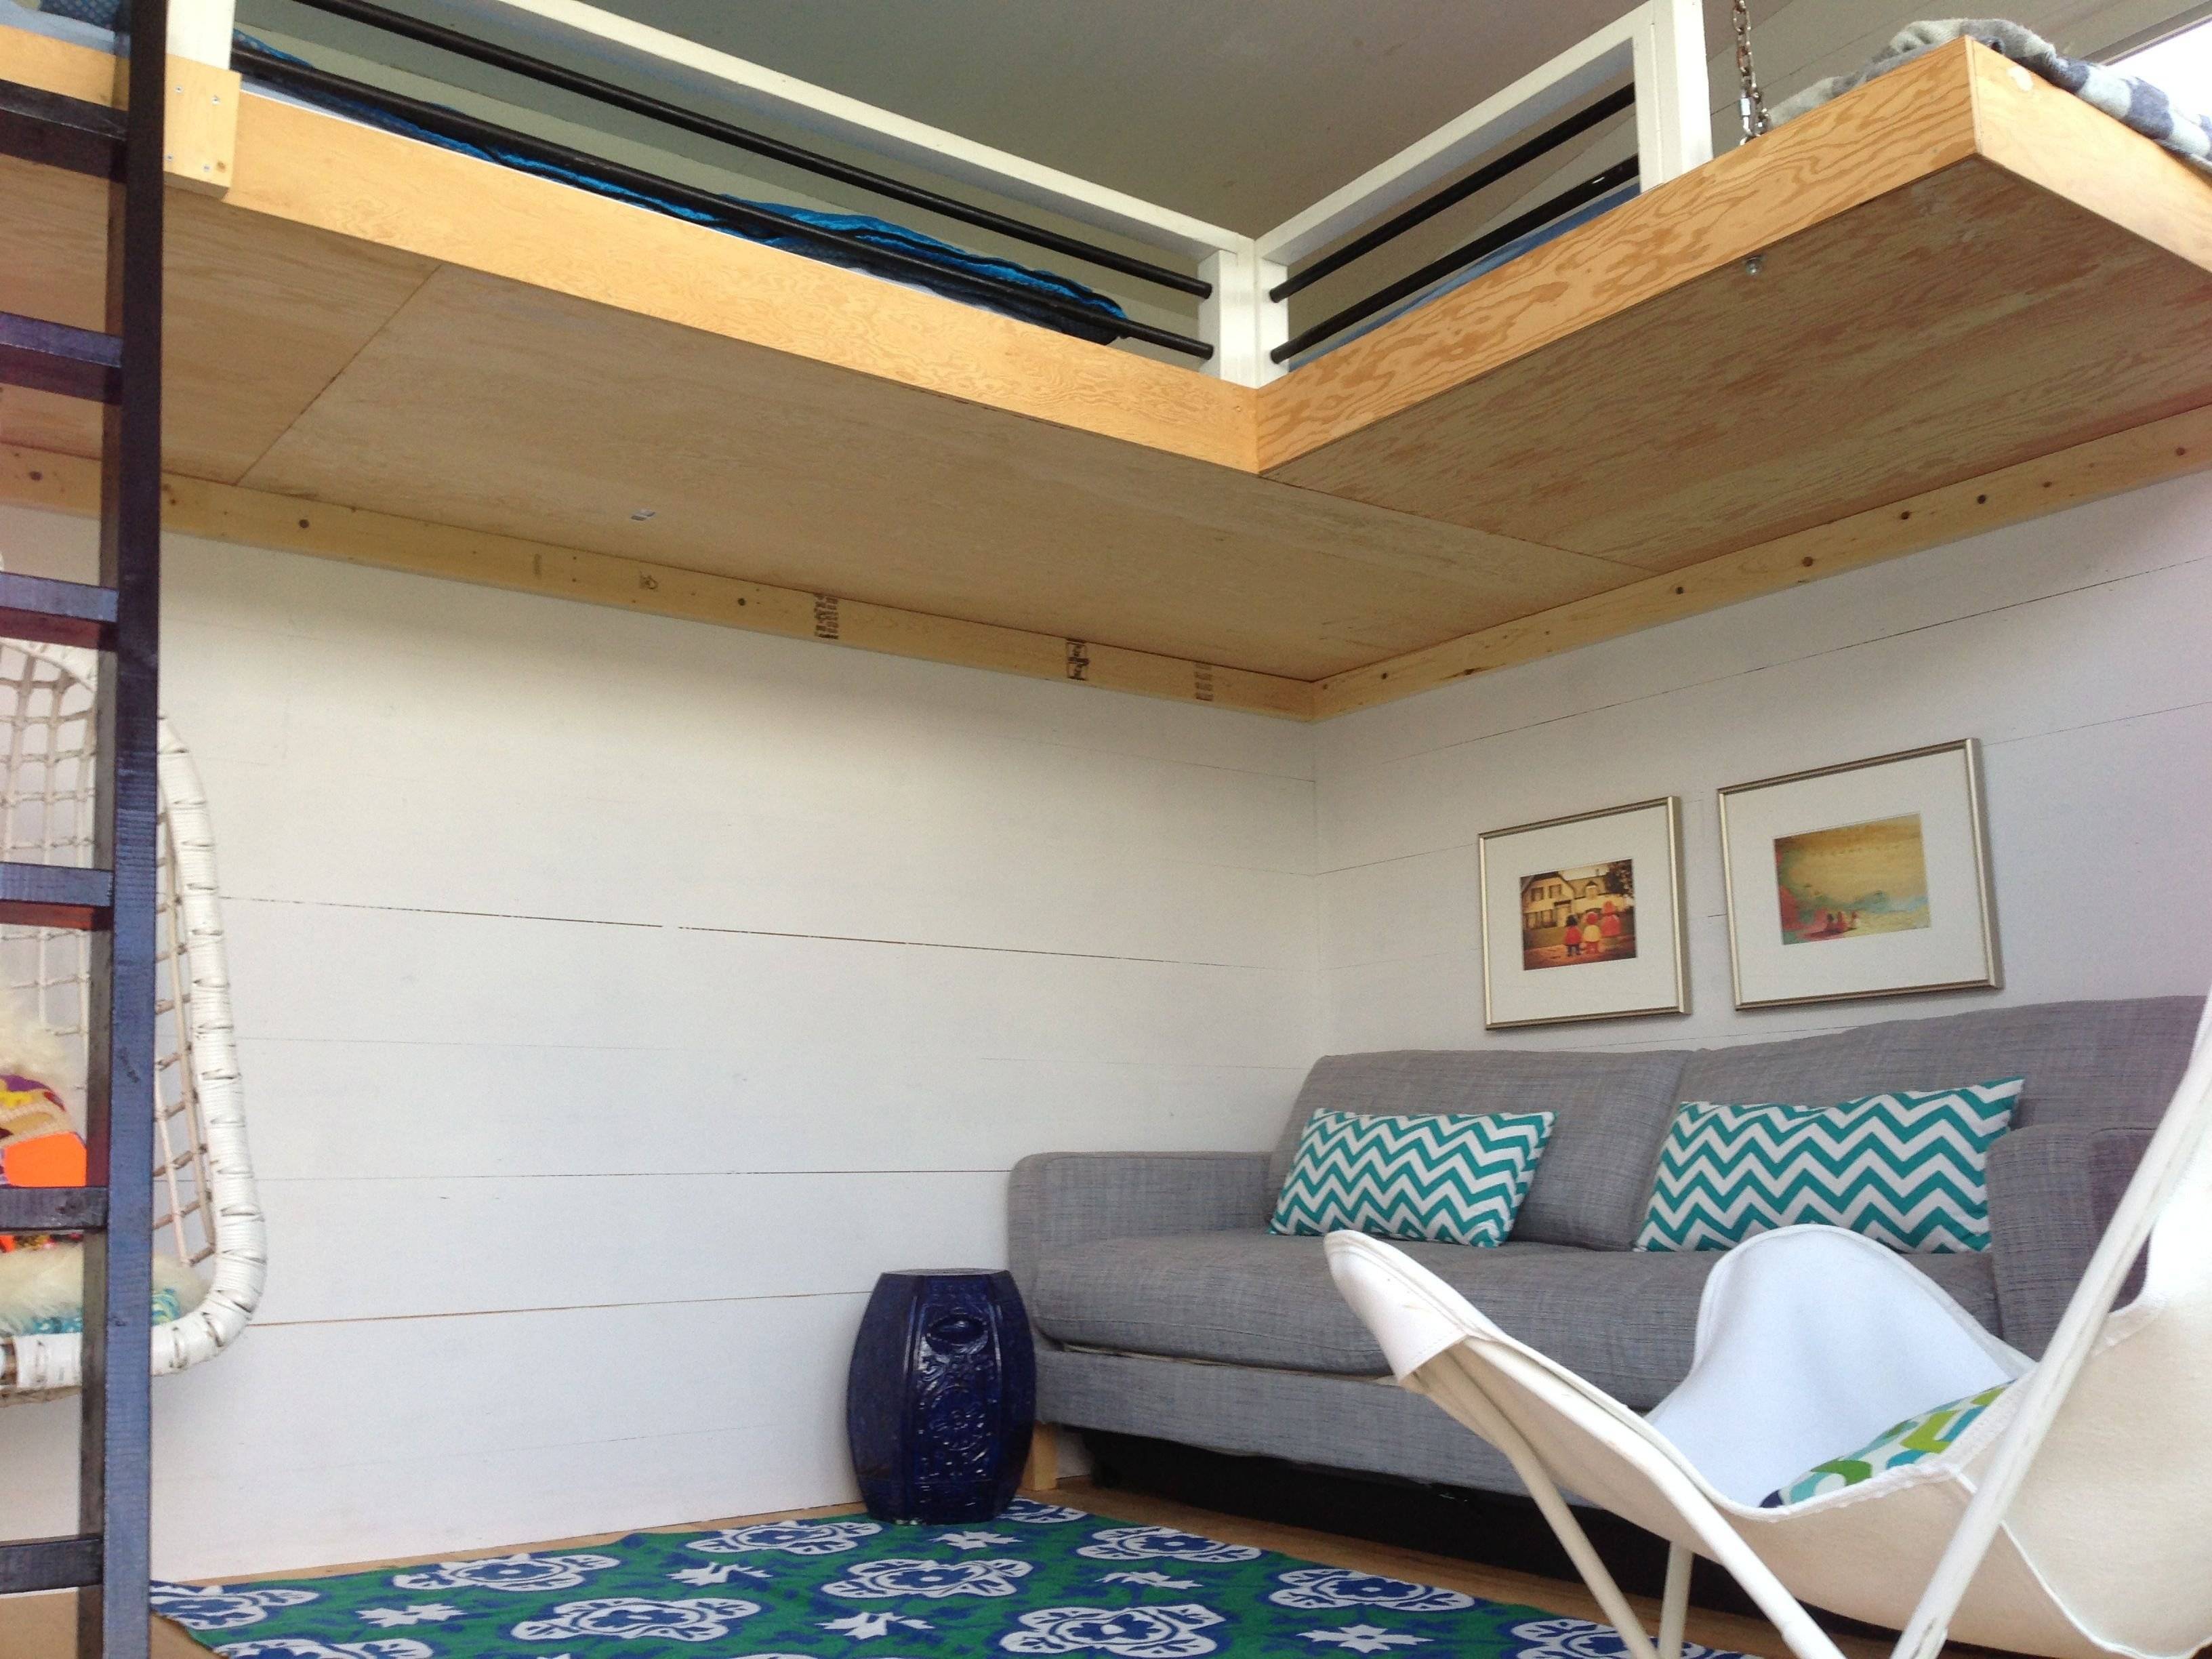 Кровать под потолком: 40+ фото в интерьере, современные идеи дизайна